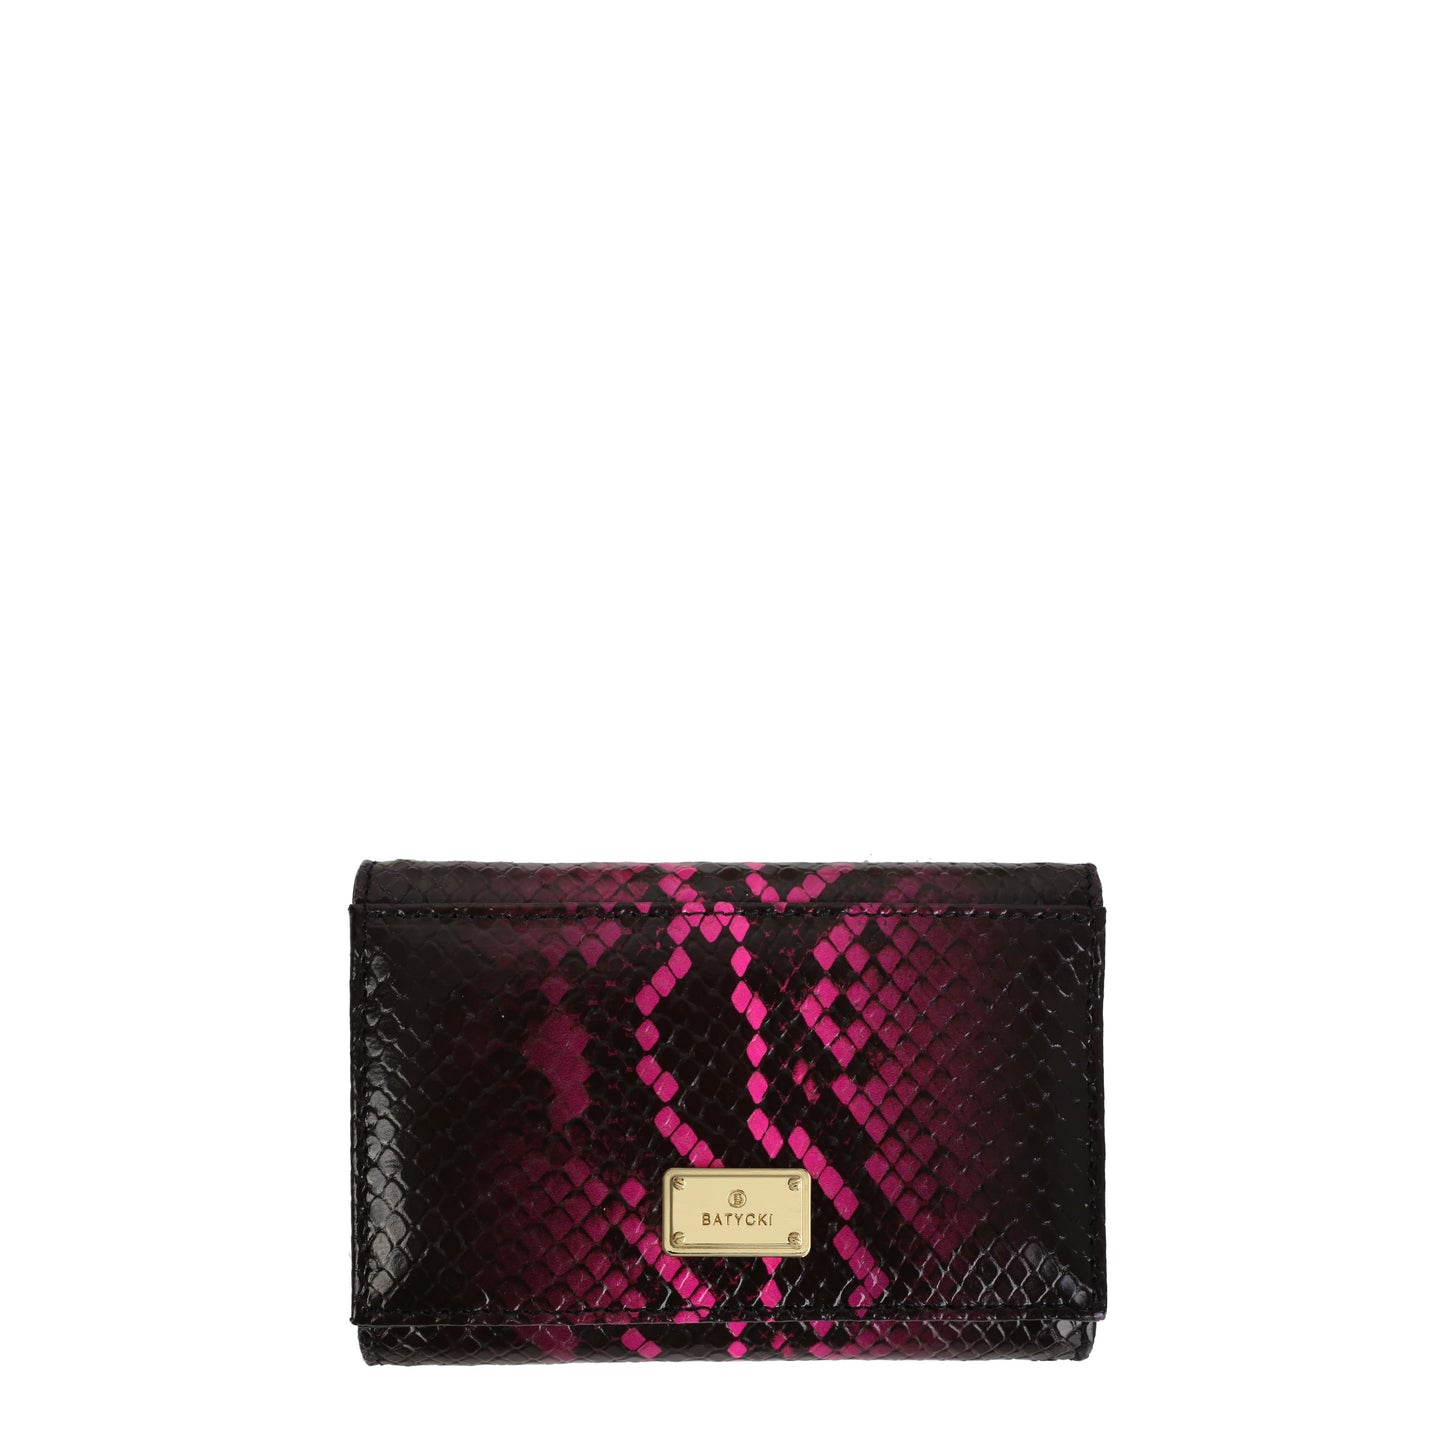 CASPER BLACK women's leather wallet